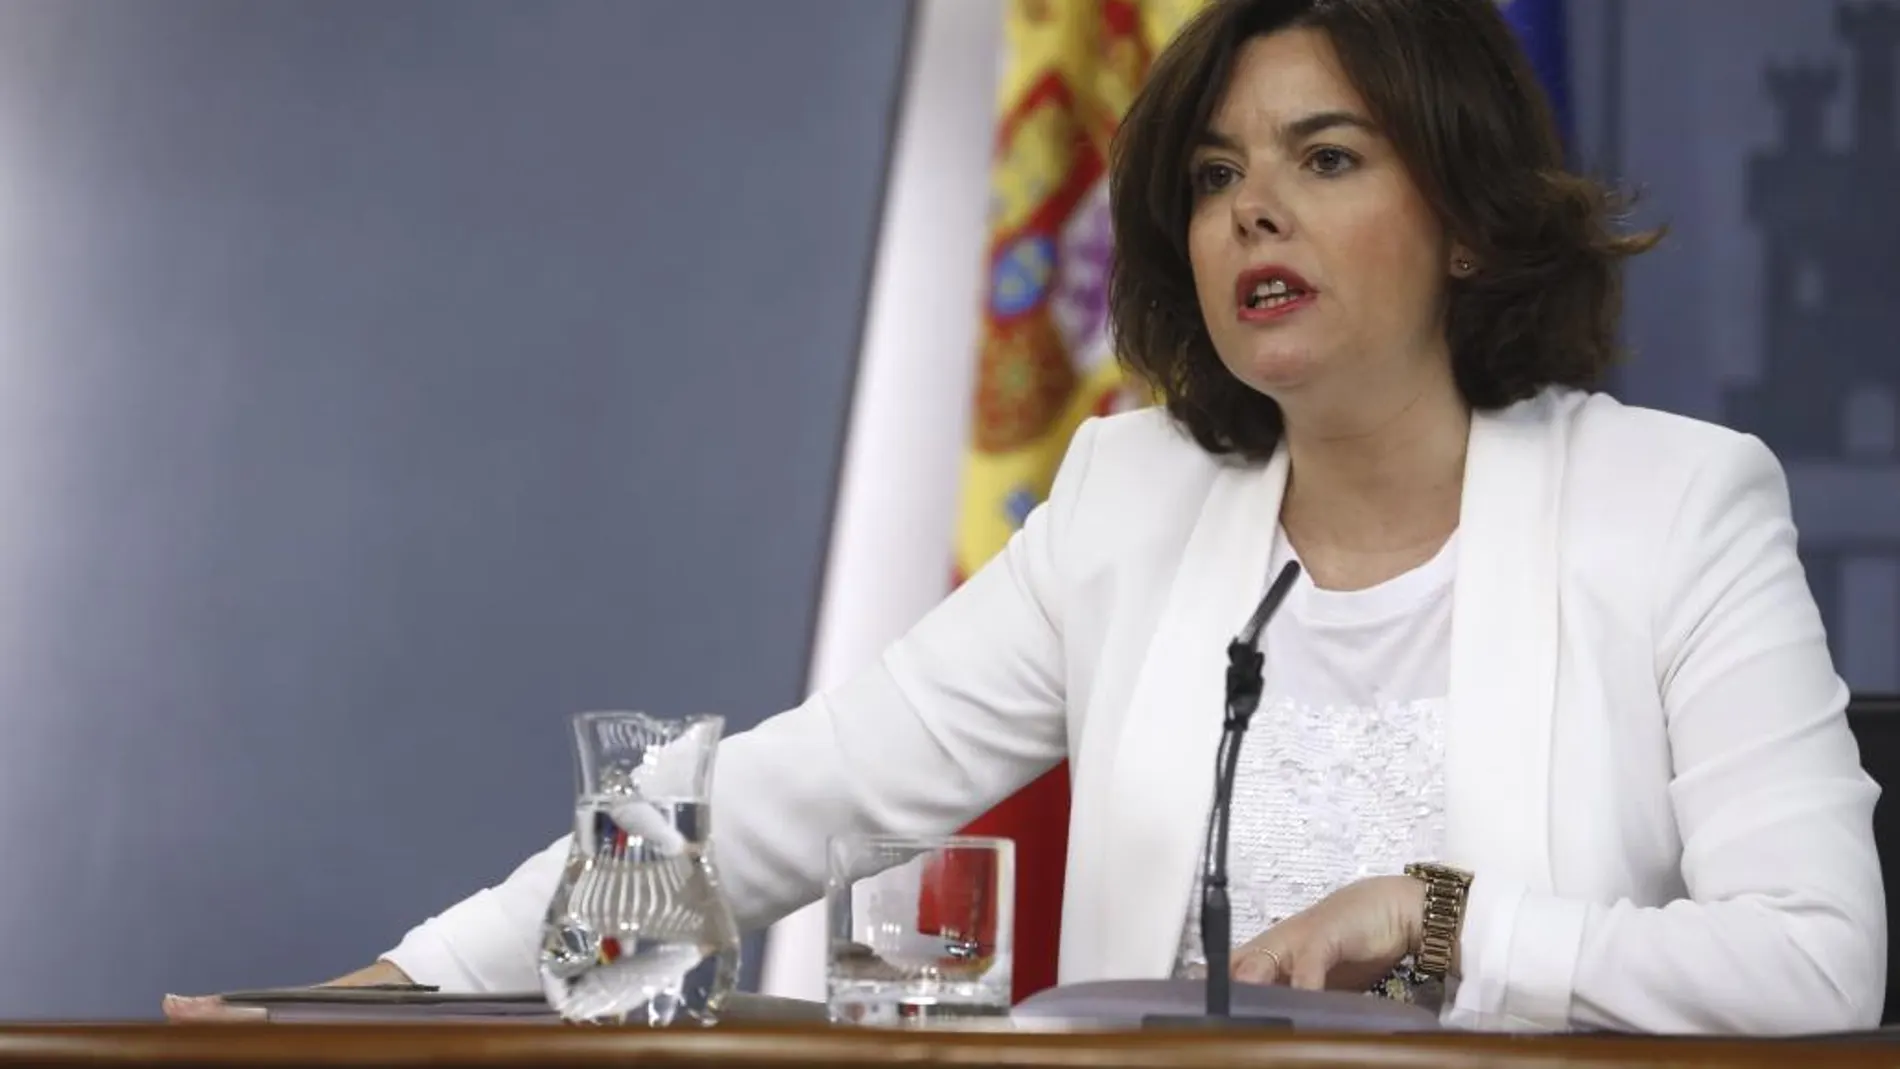 La vicepresidenta del Gobierno en funciones, Soraya Sáenz de Santamaría, durante la rueda de prensa tras la reunión del Consejo de Ministros